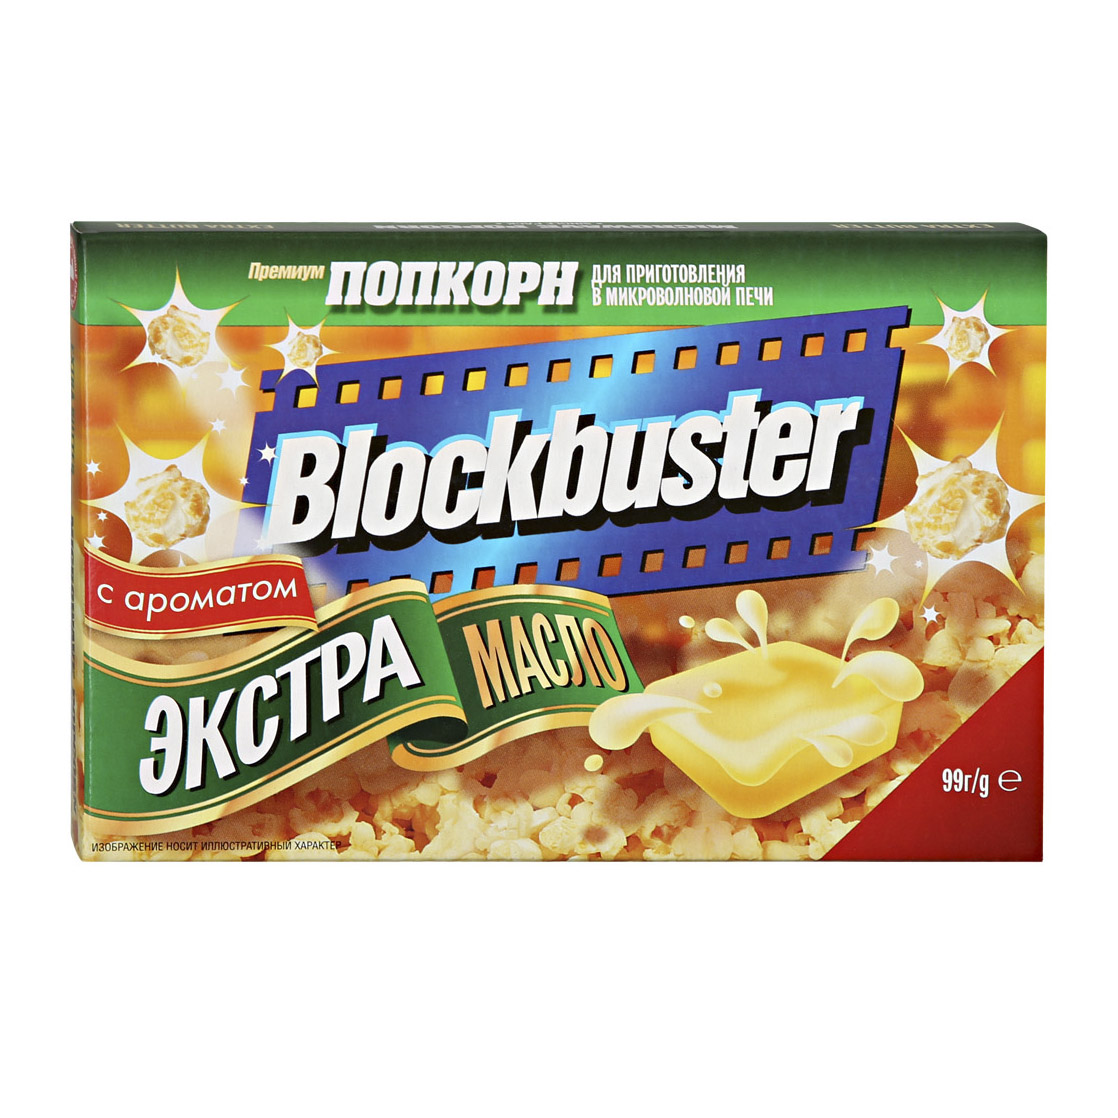 Попкорн Blockbuster Экстра масло 99 г масло сливочное простоквашино 82% бзмж 180 гр